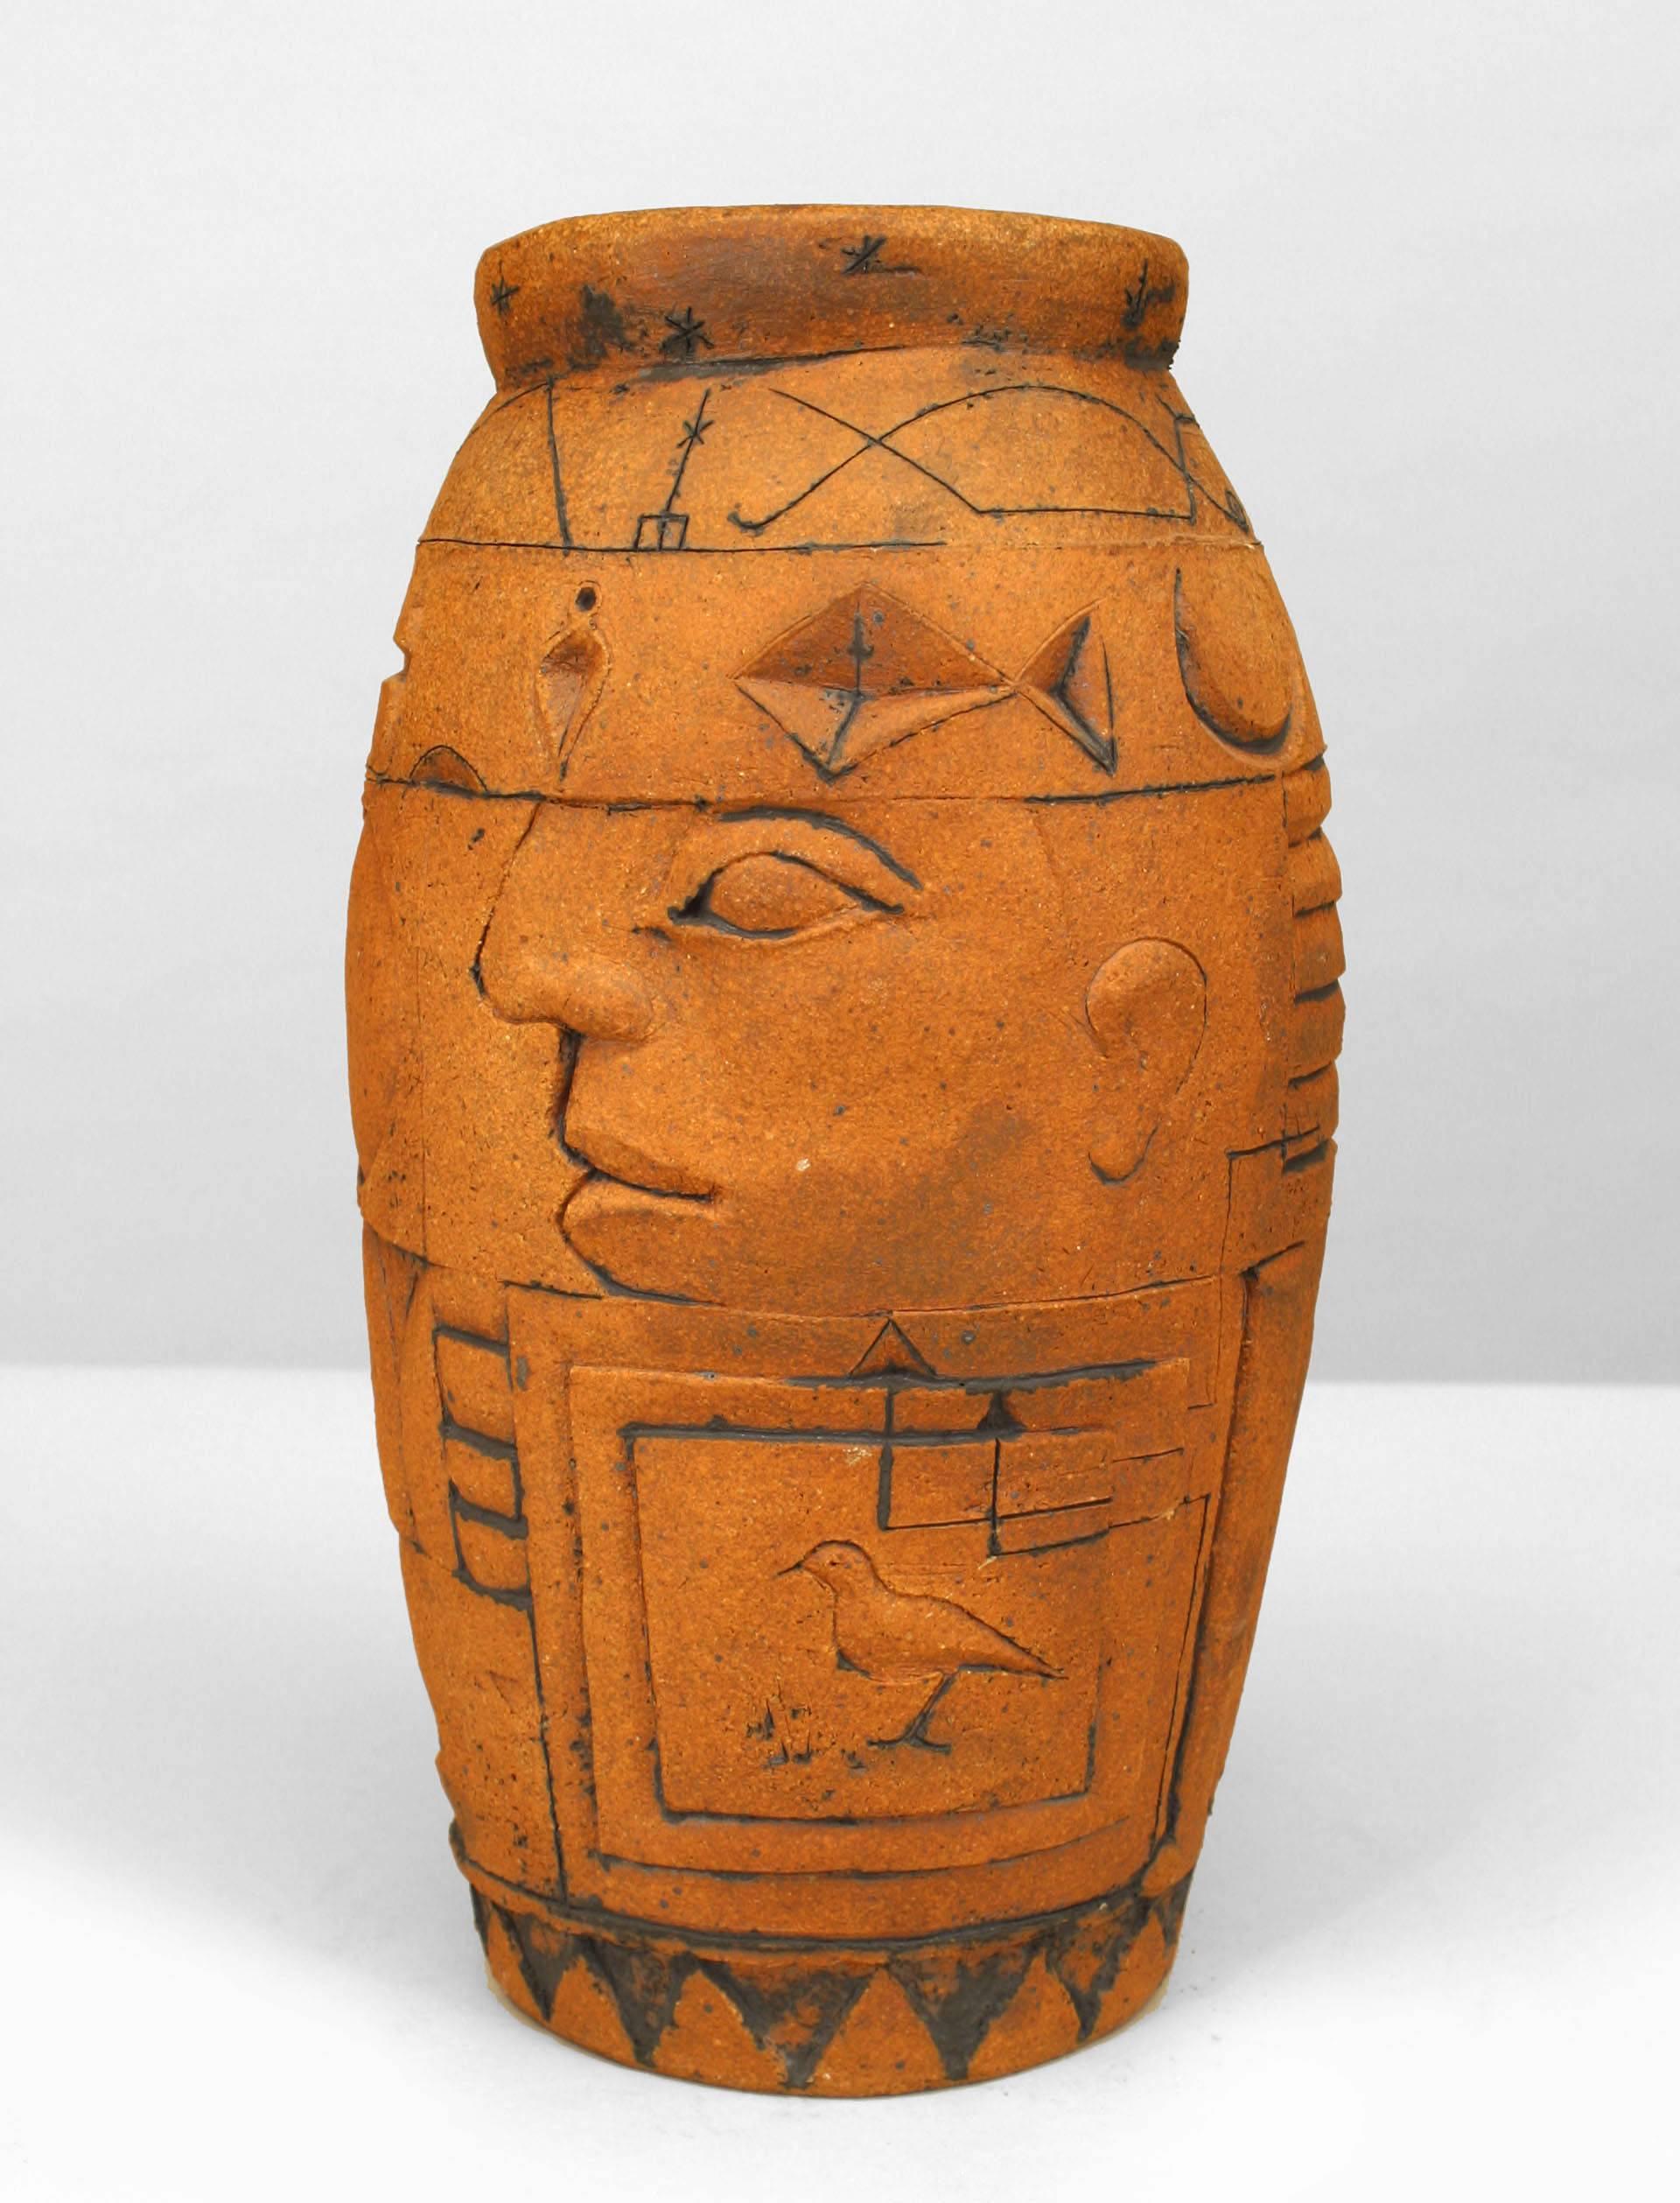 Vase en terre cuite de conception égyptienne d'après-guerre avec des hiéroglyphes en relief sculptés avec des visages, des symboles et des oiseaux (signé par ROBERT BENTLEY).
